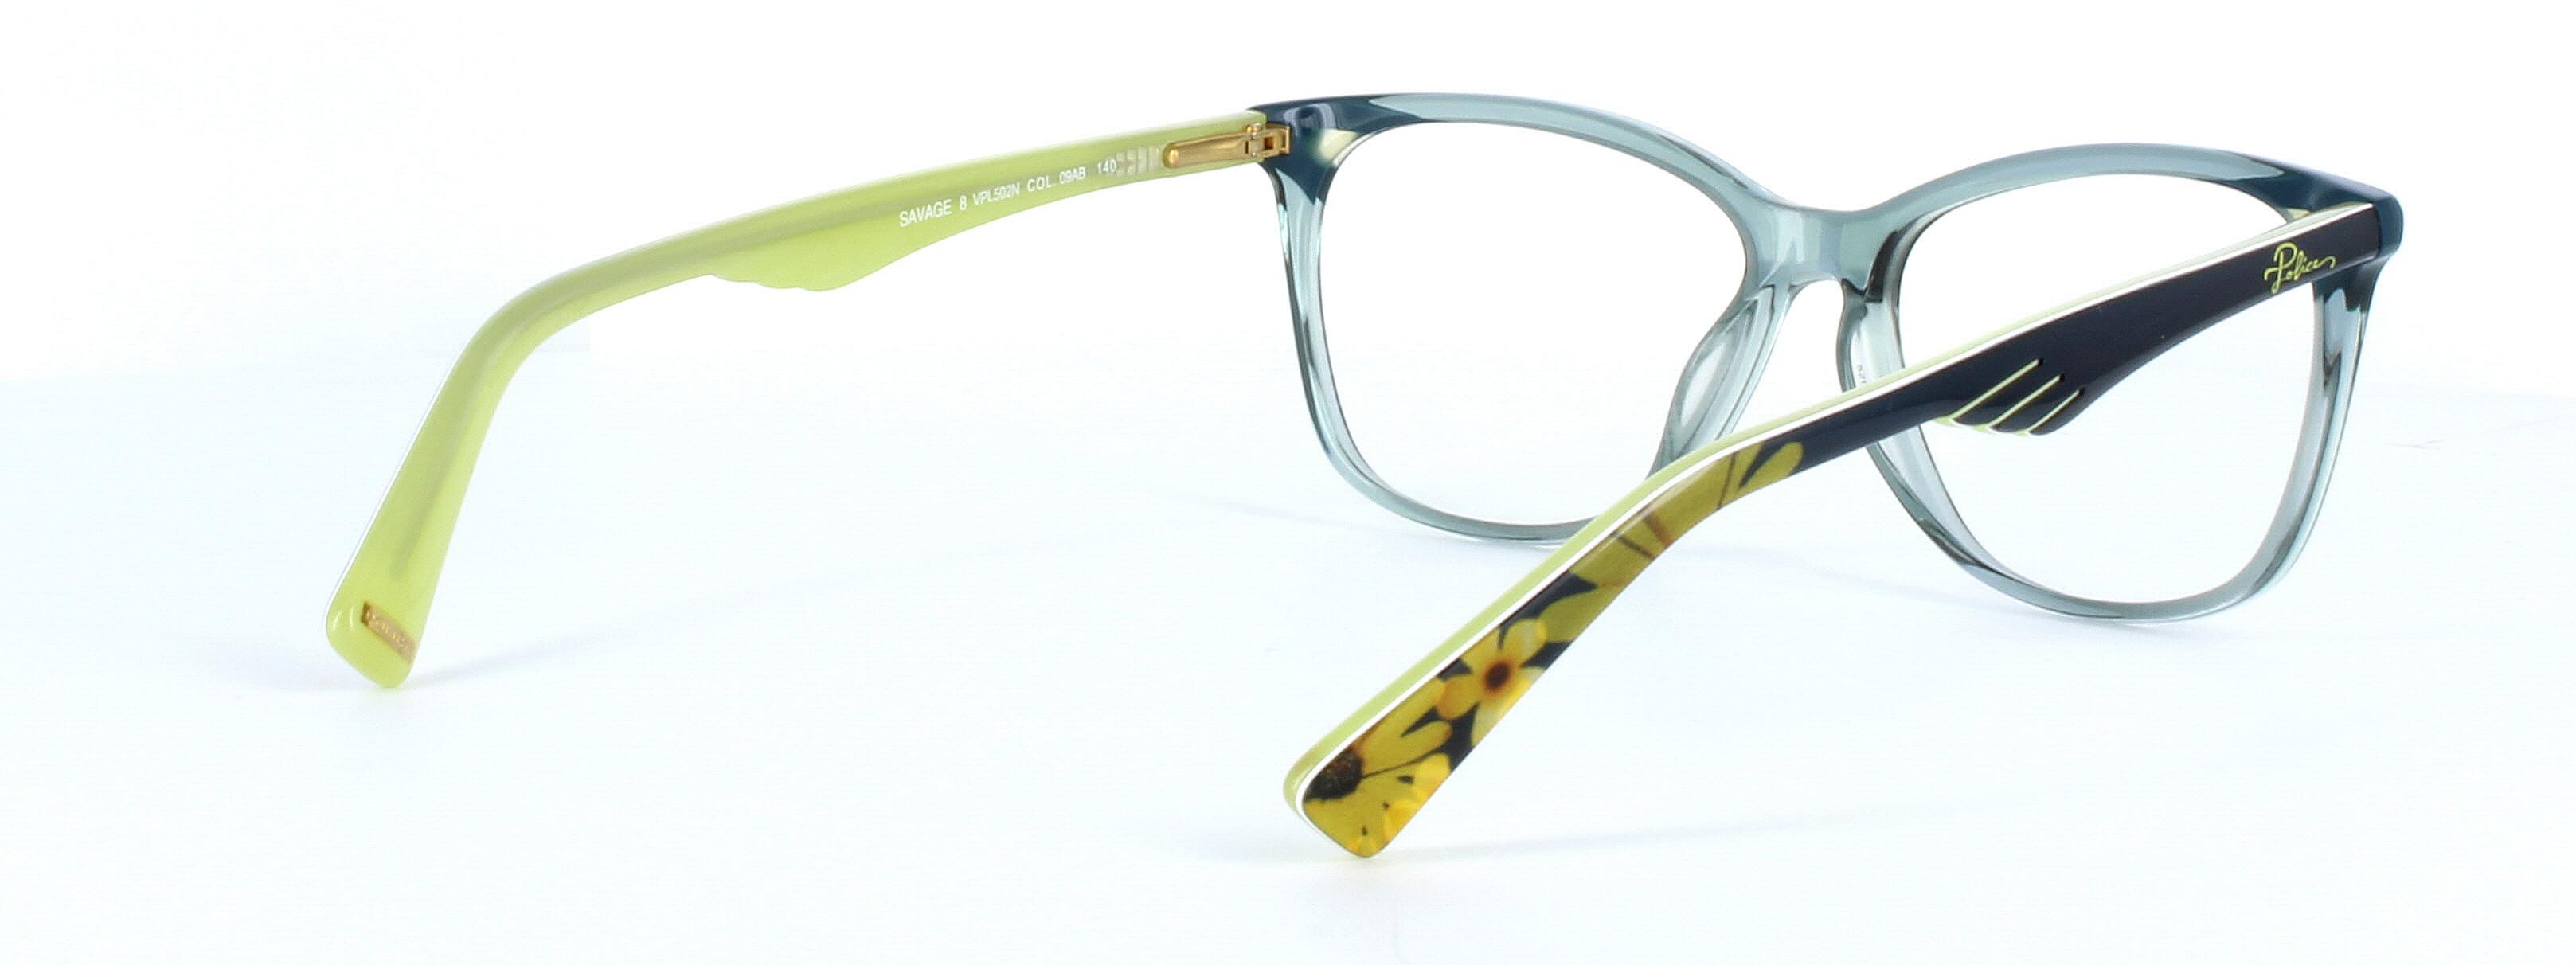 Police VPL502N - Ladies designer acetate glasses in crystal green - image view 4